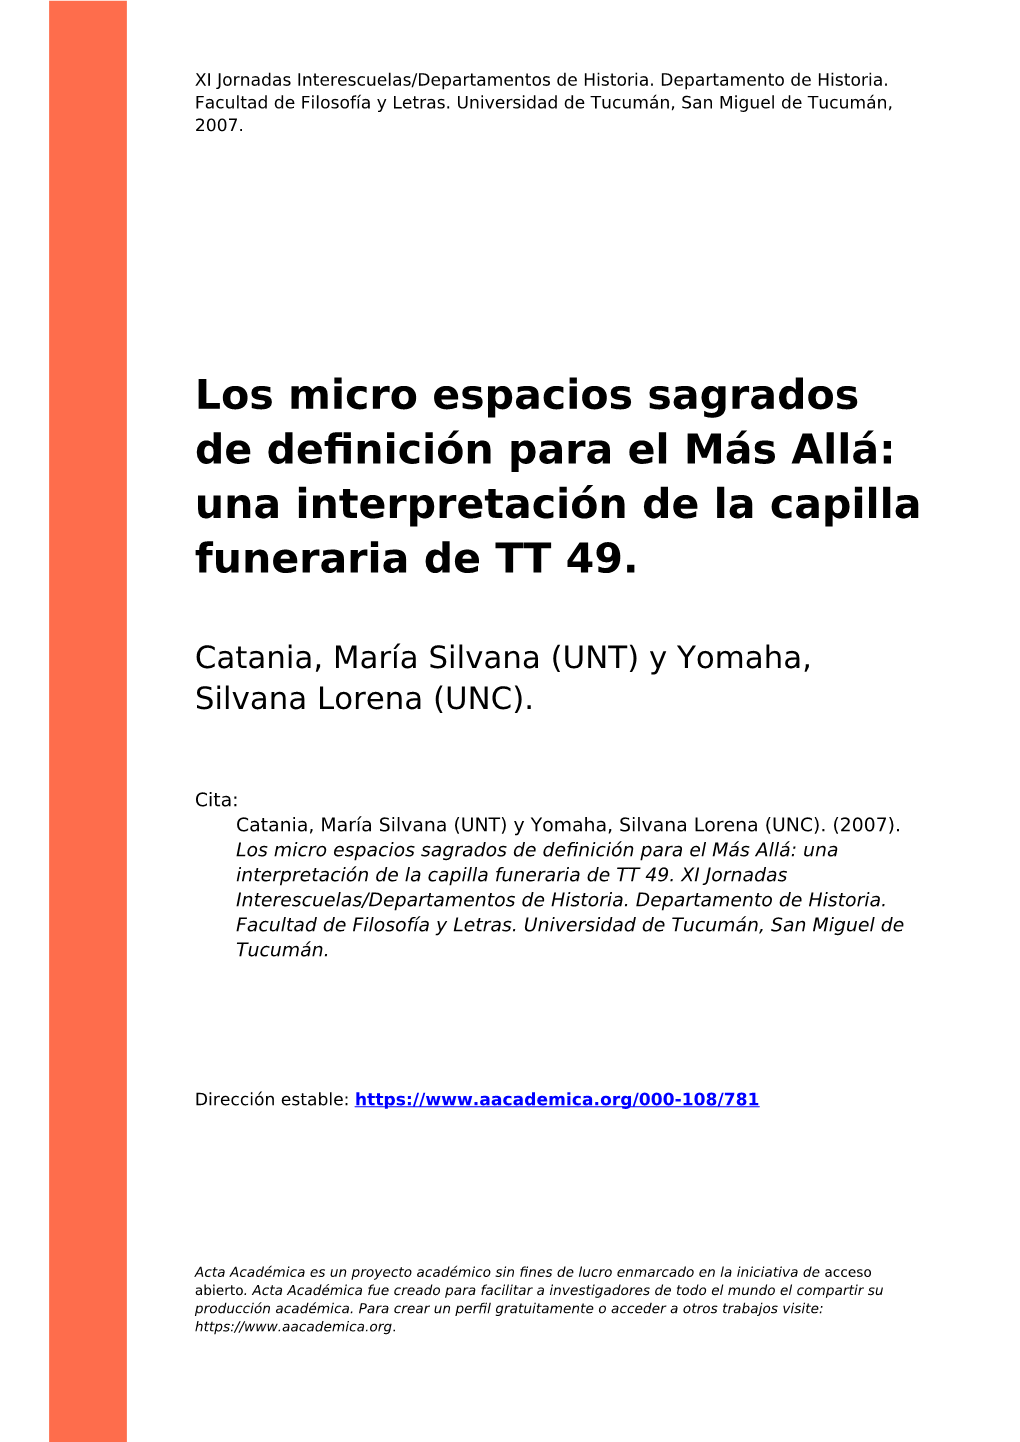 Los Micro Espacios Sagrados De Definición Para El Más Allá: Una Interpretación De La Capilla Funeraria De TT 49”